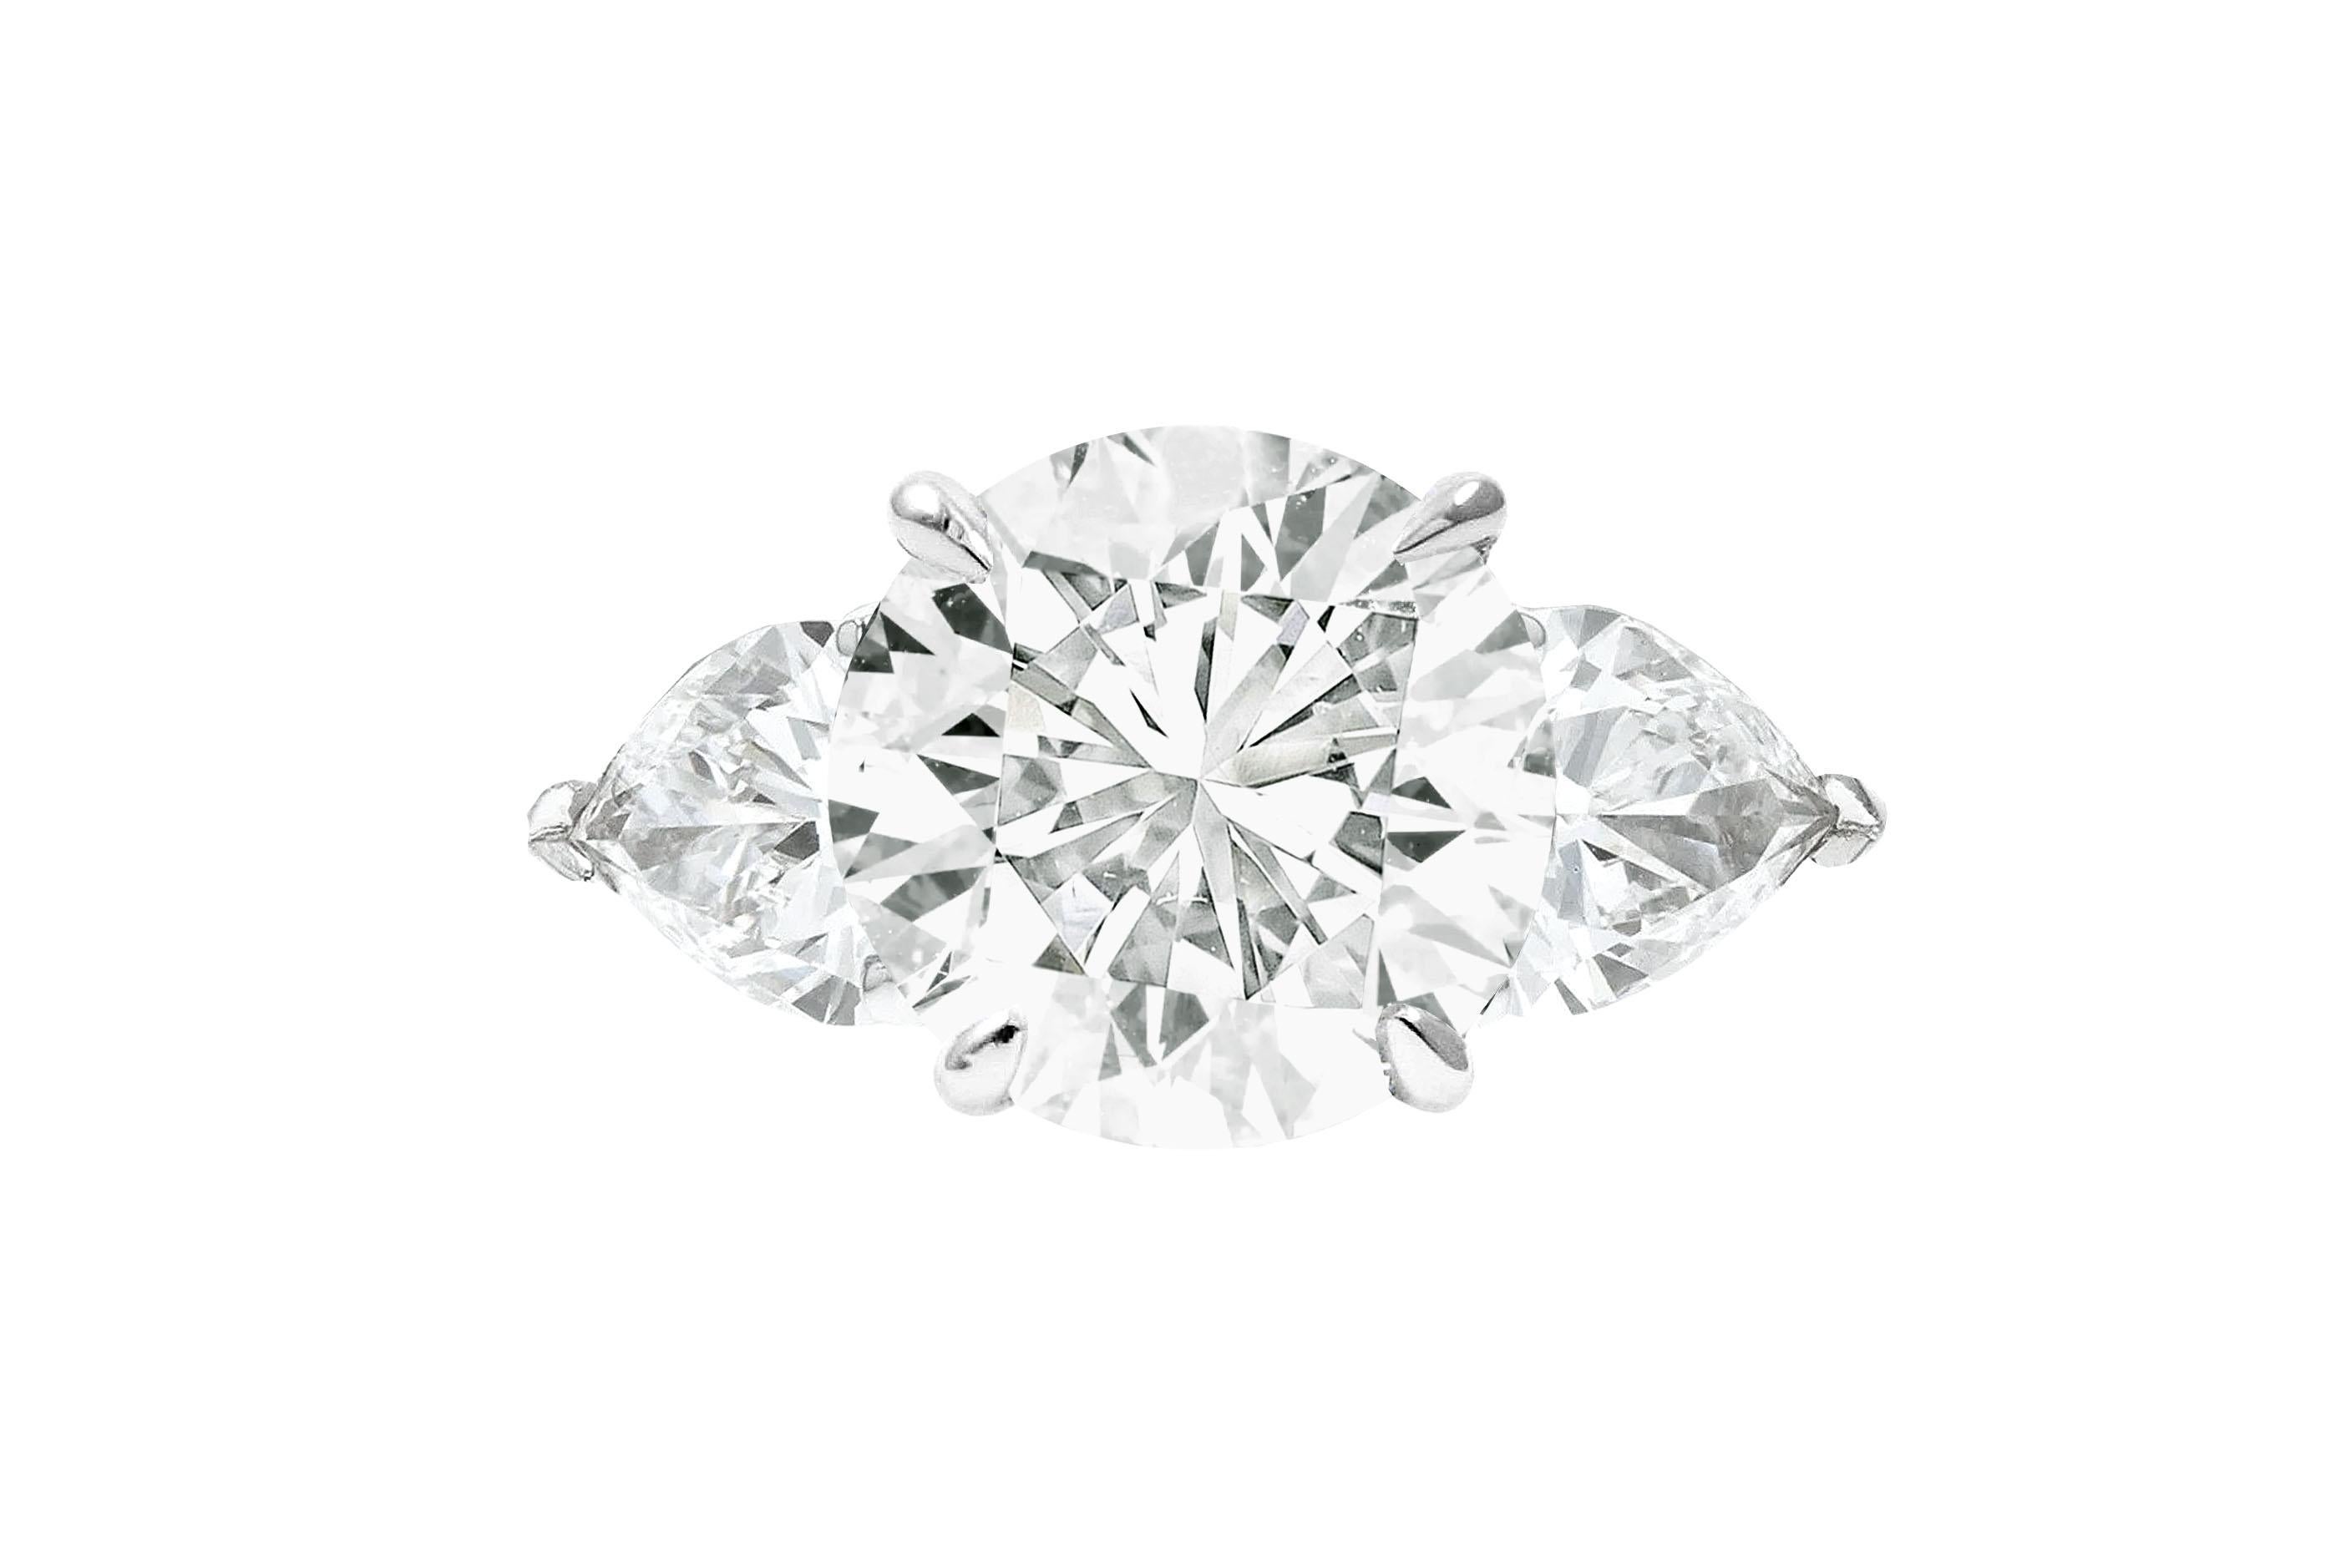 Schmücken Sie sich mit der zeitlosen Eleganz dieses GIA-zertifizierten 2-Karat-Rundschliff-Diamantrings, der von zwei exquisiten Seitensteinen im Birnenschliff akzentuiert wird. Das Herzstück dieses bezaubernden Rings ist ein brillanter